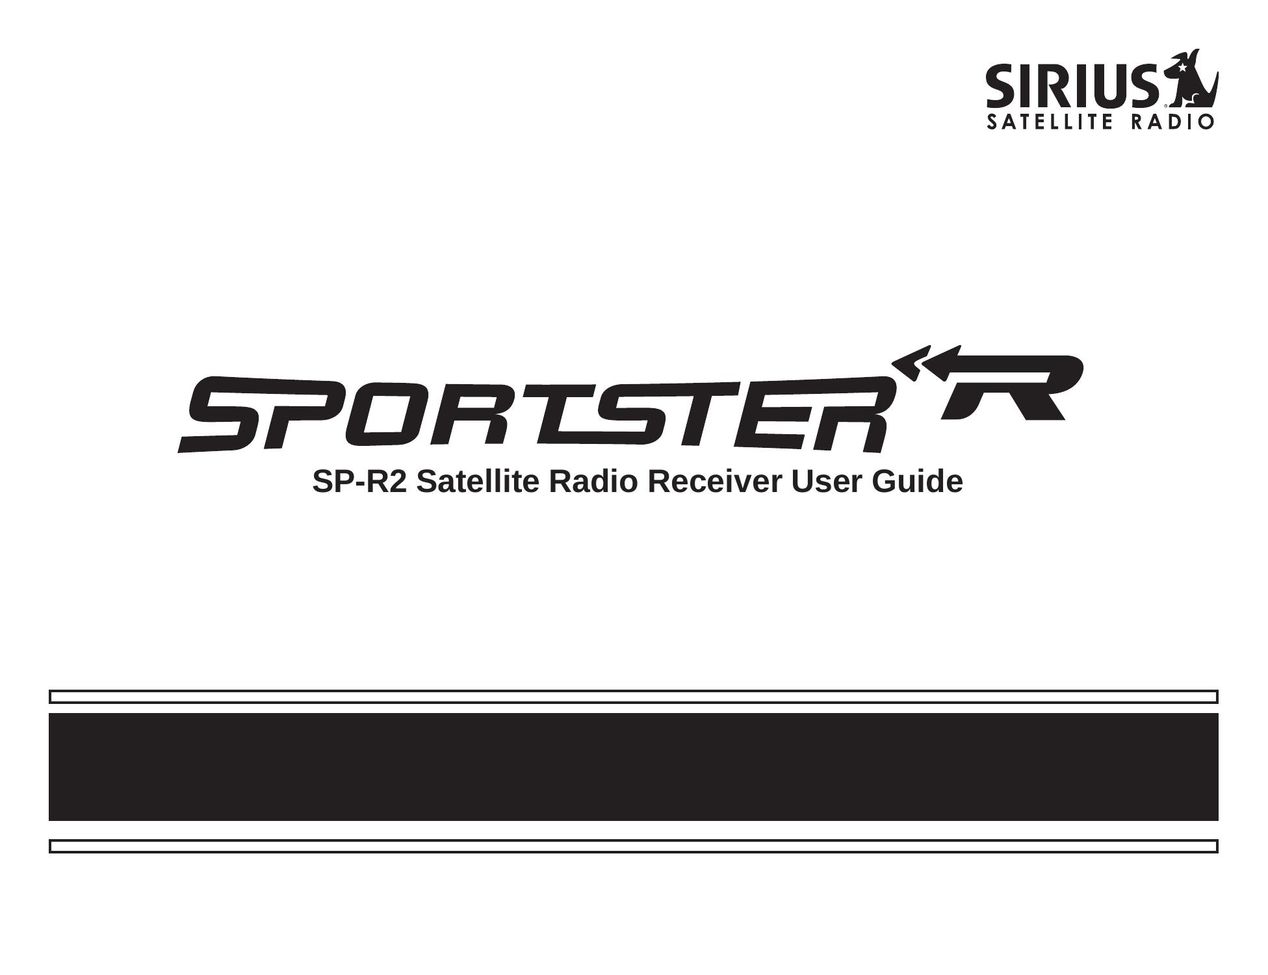 Sirius Satellite Radio SP-R2 Satellite Radio User Manual